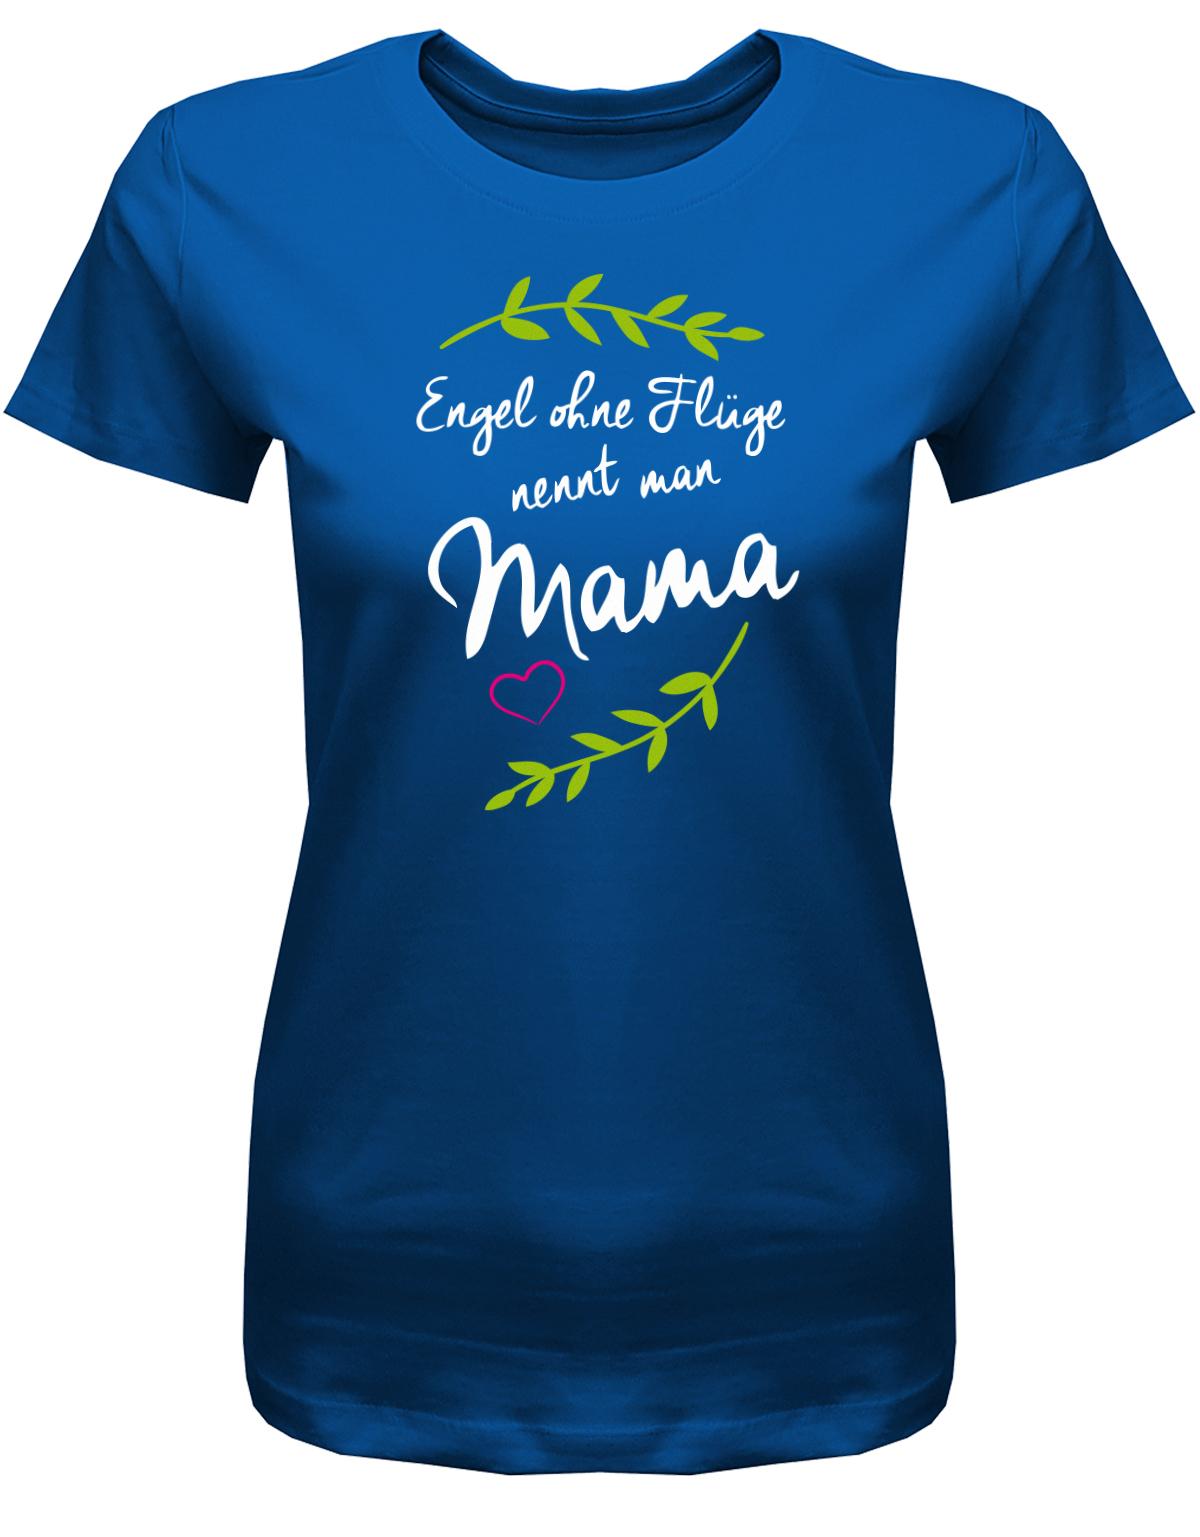 Engel-ohne-Fl-gel-nennt-man-Mama-Damen-Shirt-Royalblau